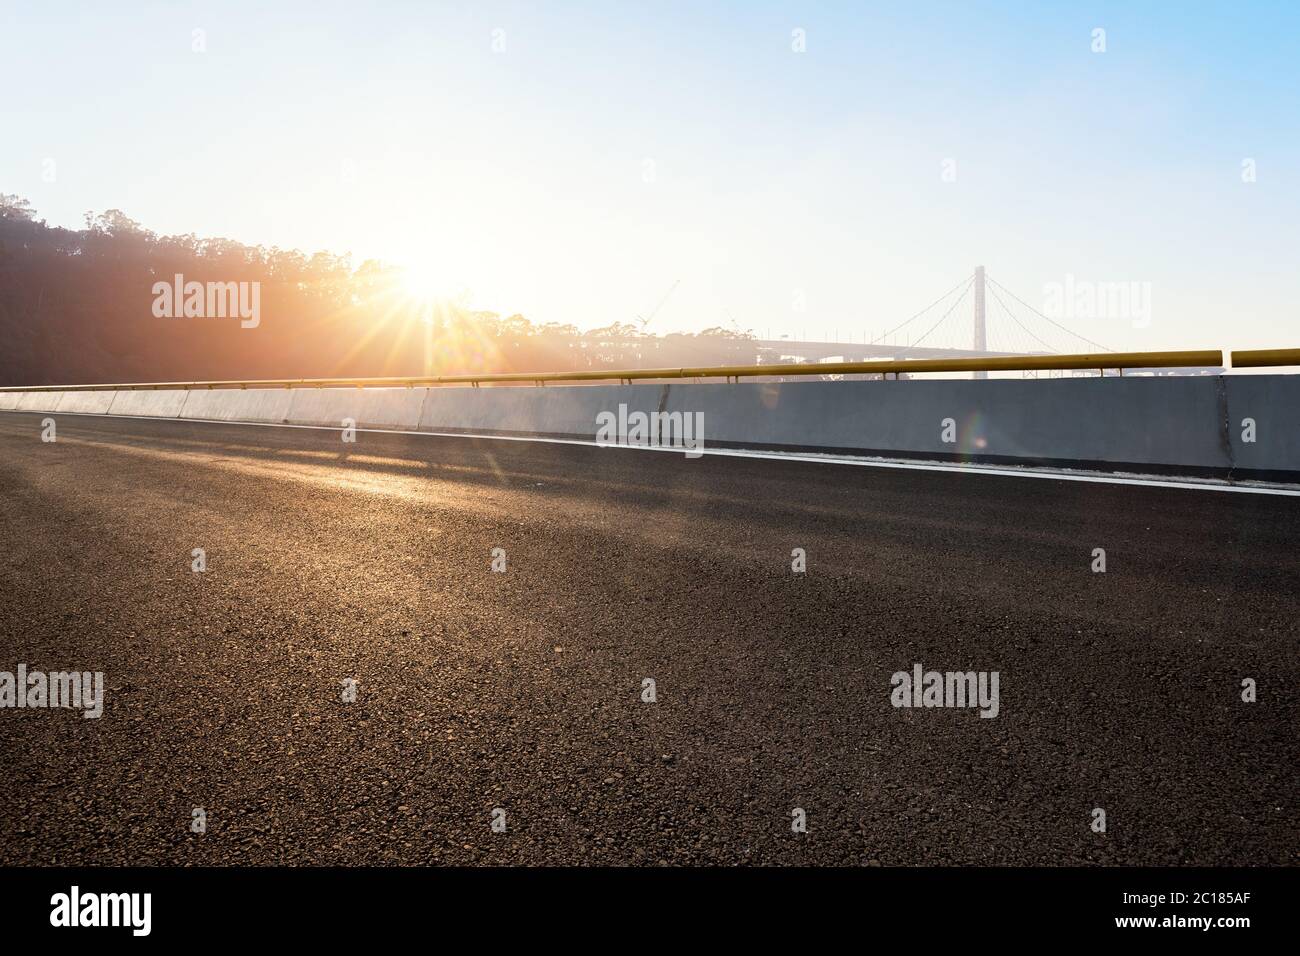 strada vuota con ponte sospeso con fascio solare Foto Stock